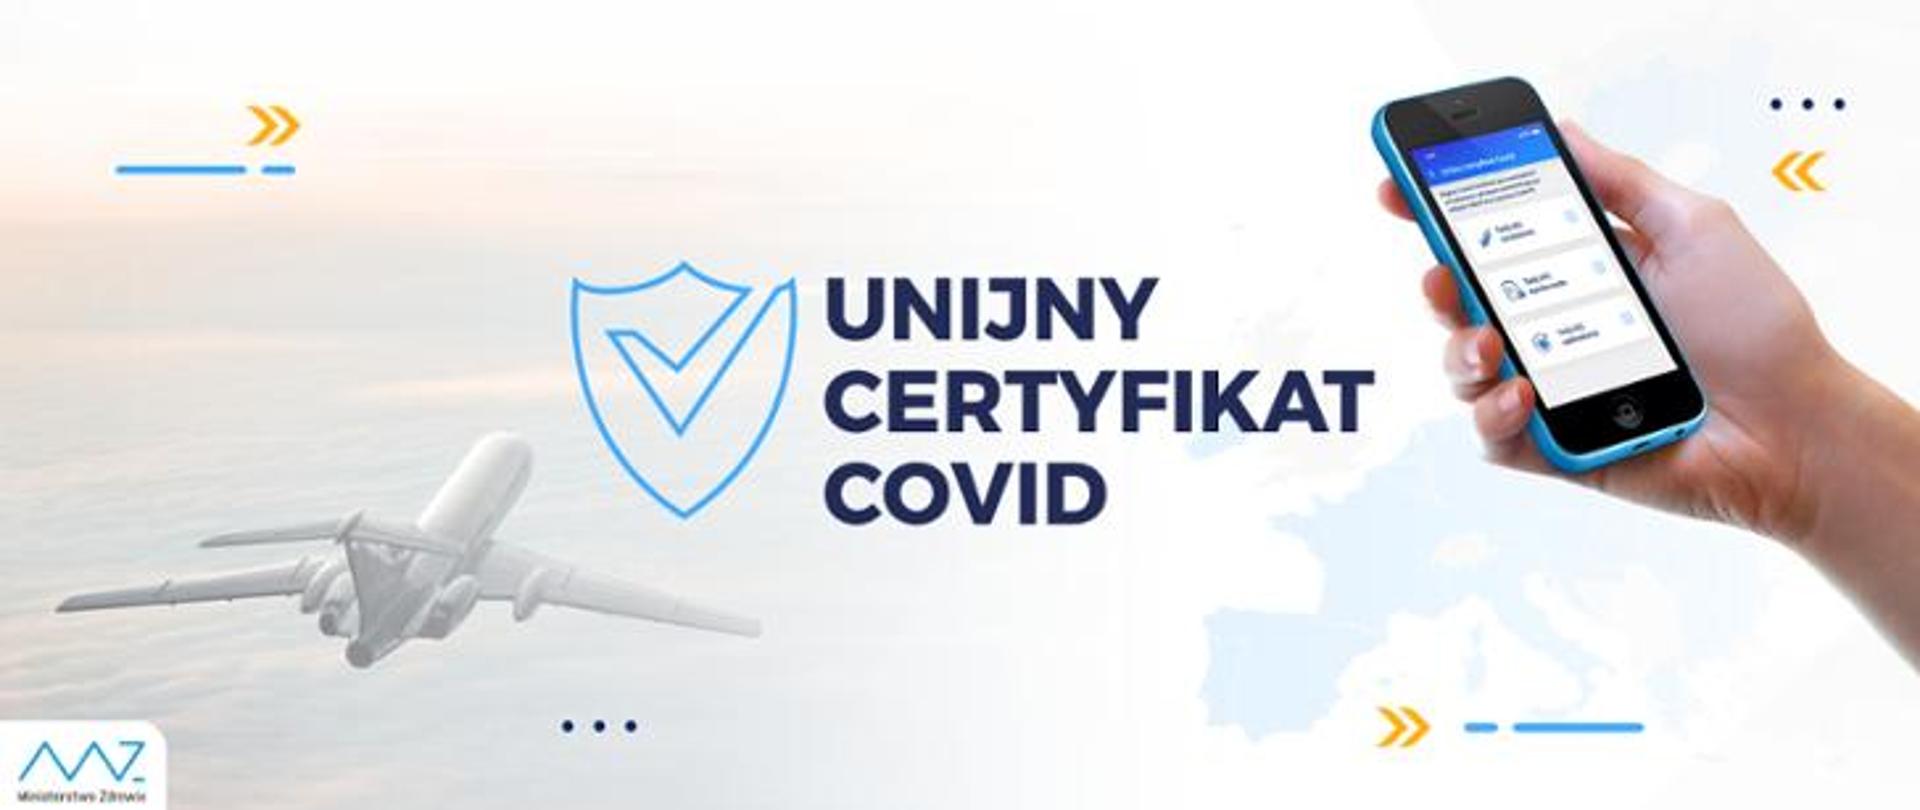 na zdjęciu samolot, telefon komórkowy oraz napis "unijny certyfikat COVID"